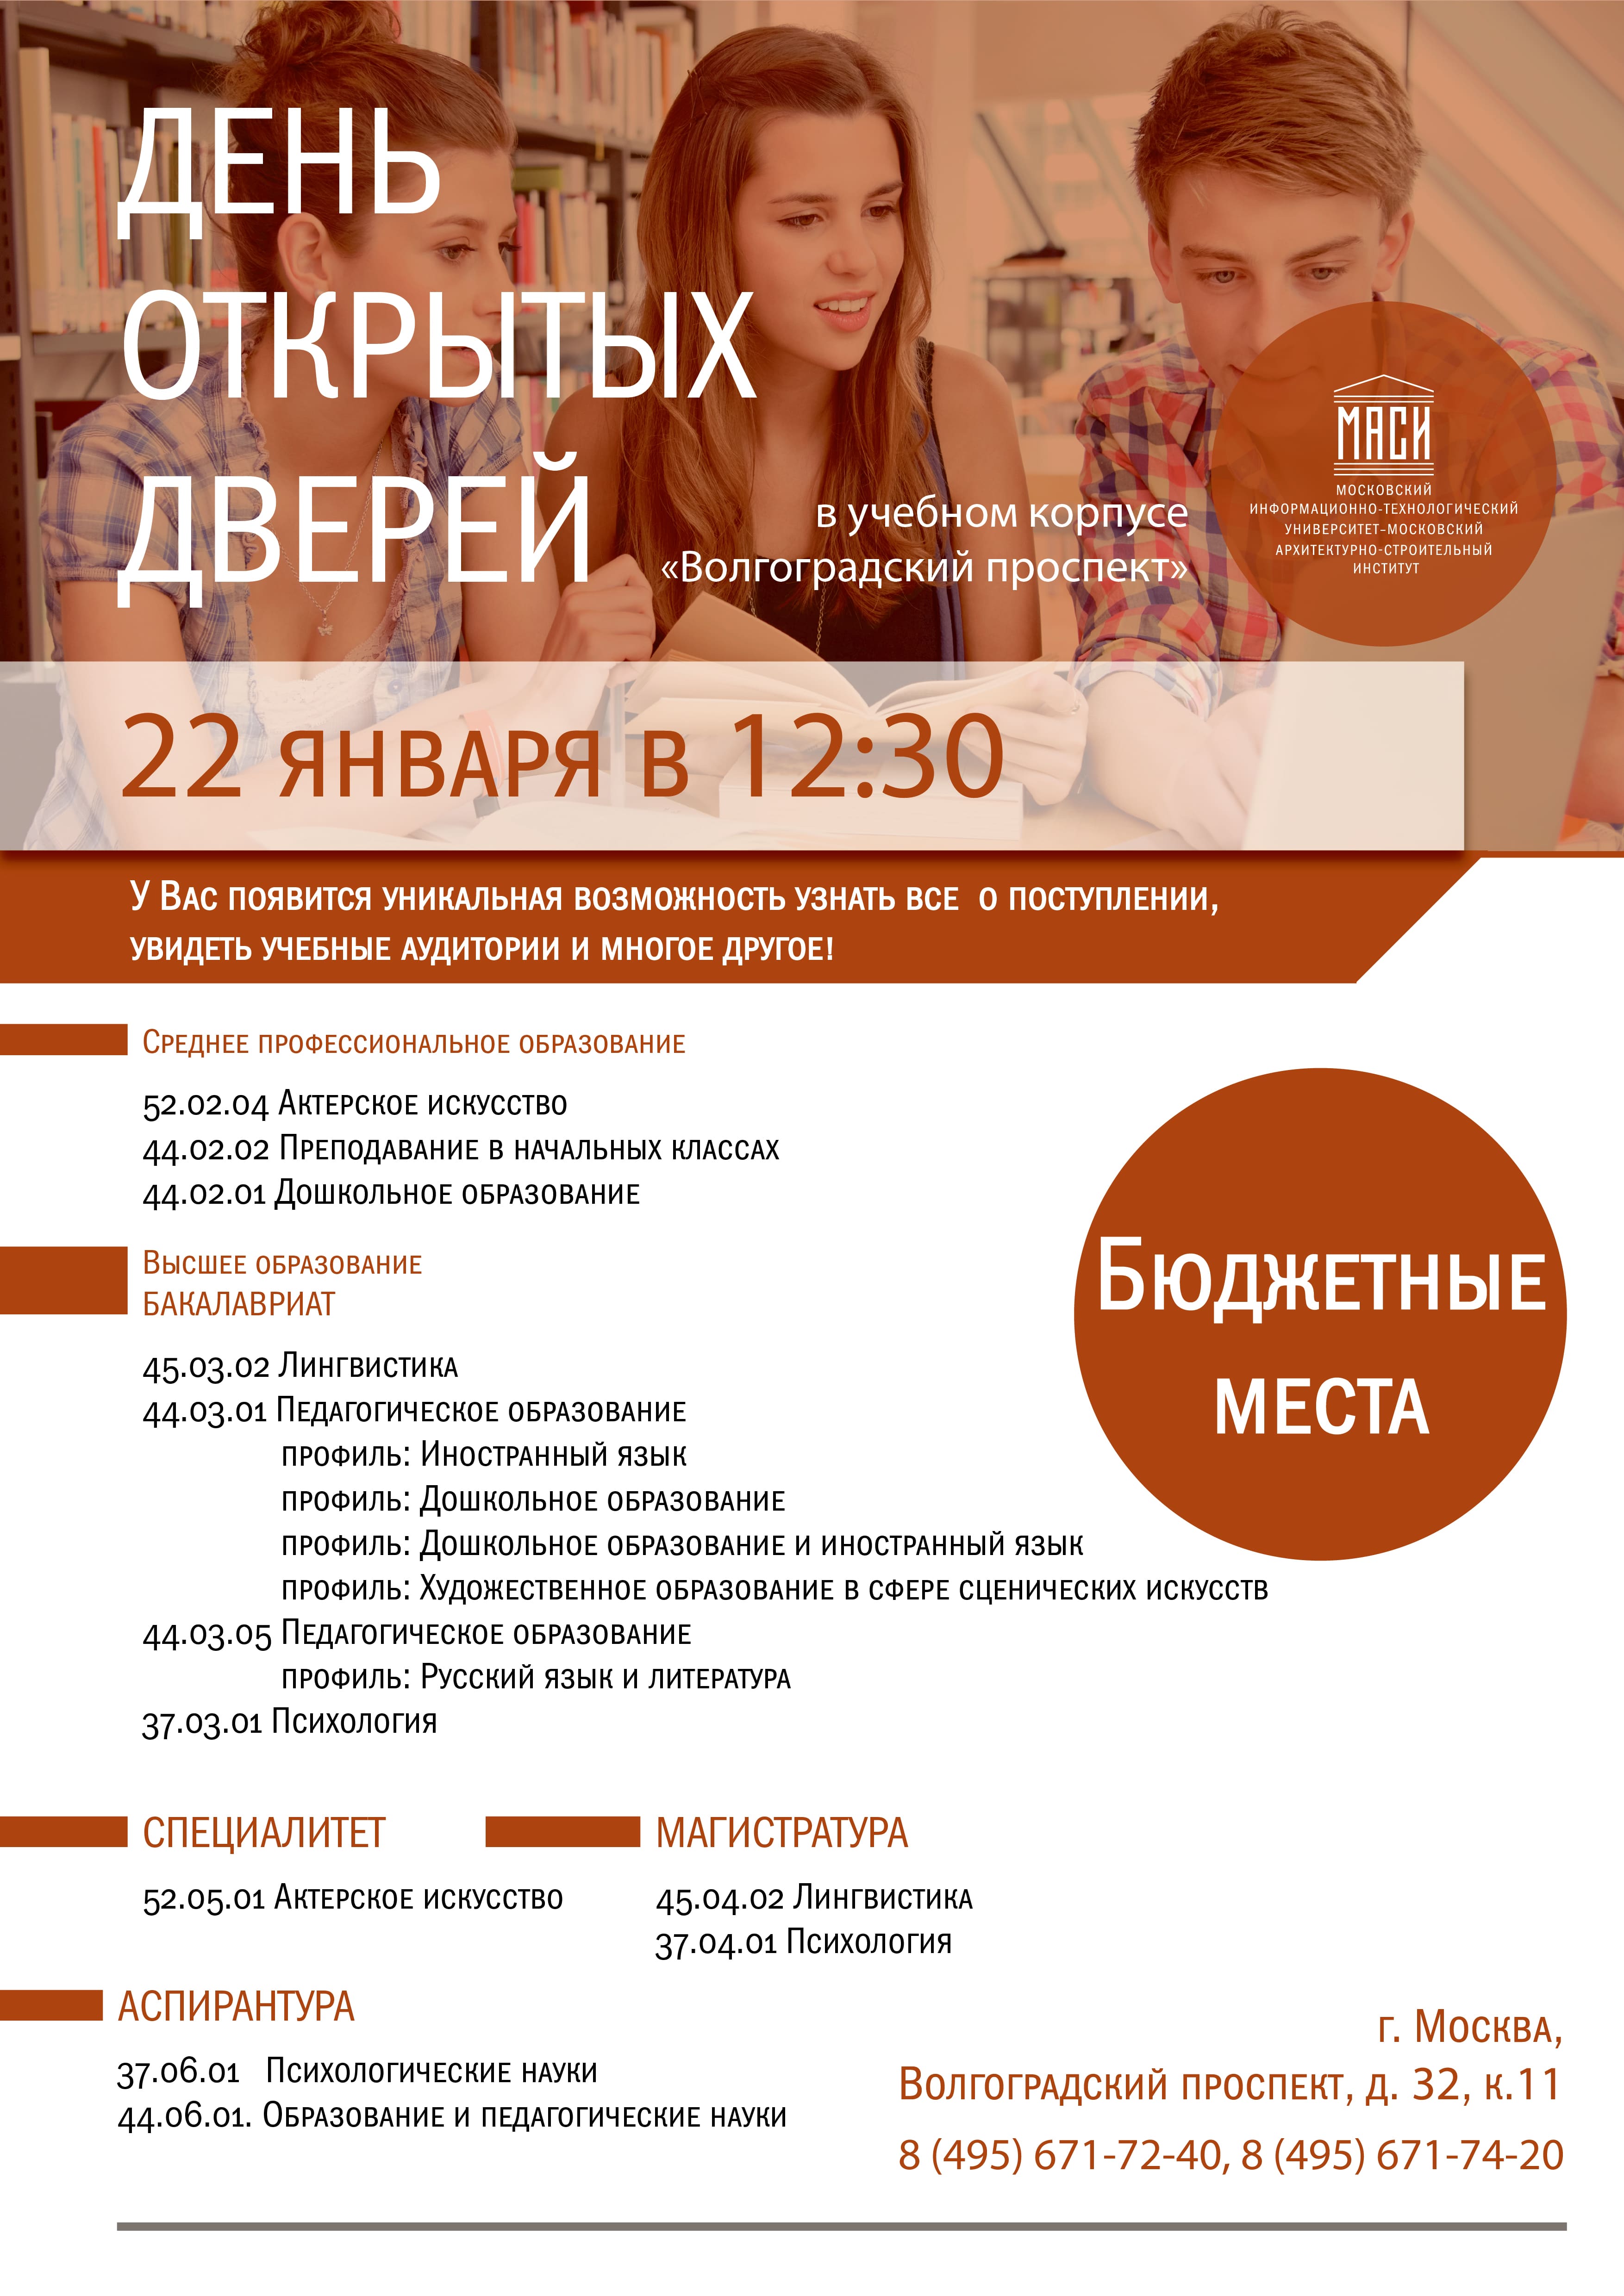 Московский информационно-технический университет (МАСИ, МГЛИ, МУГУ) - МИТУ-МАСИ приглашает на День Открытых Дверей!